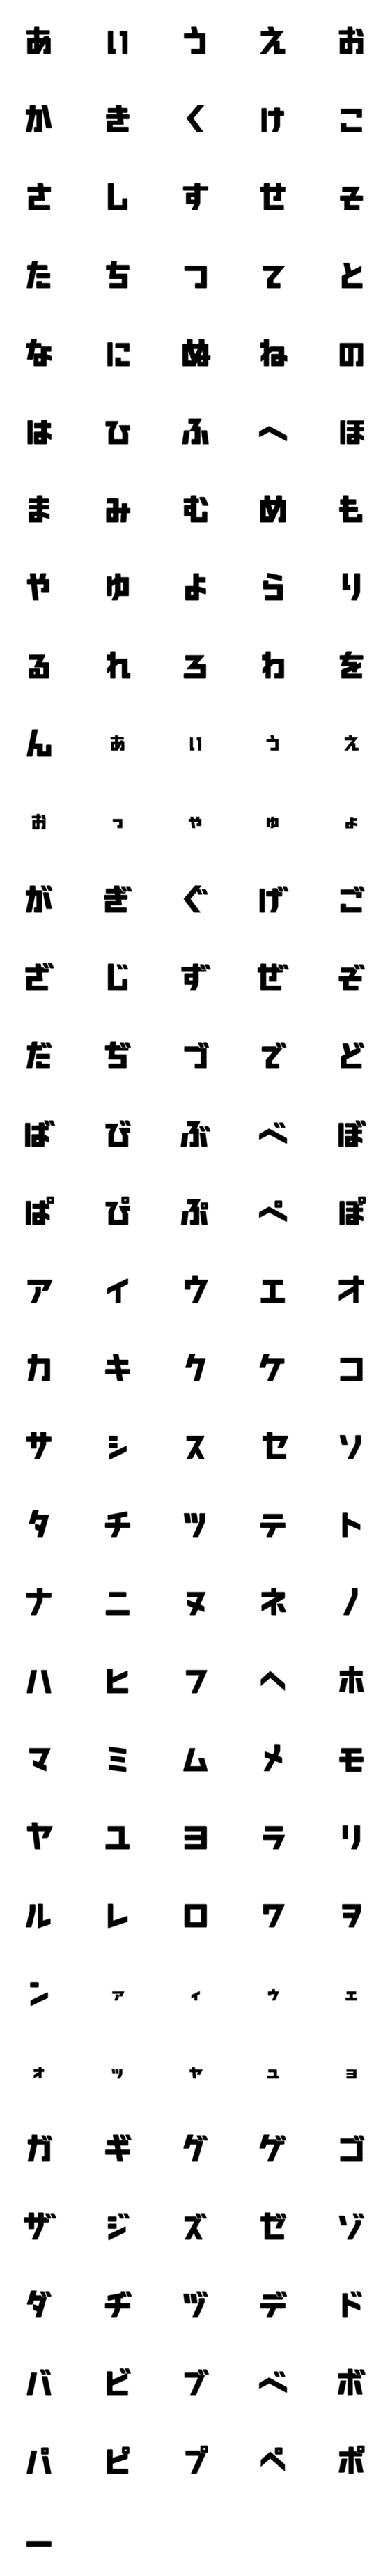 [LINE絵文字]ネモネモデジタル日本語フォントの画像一覧